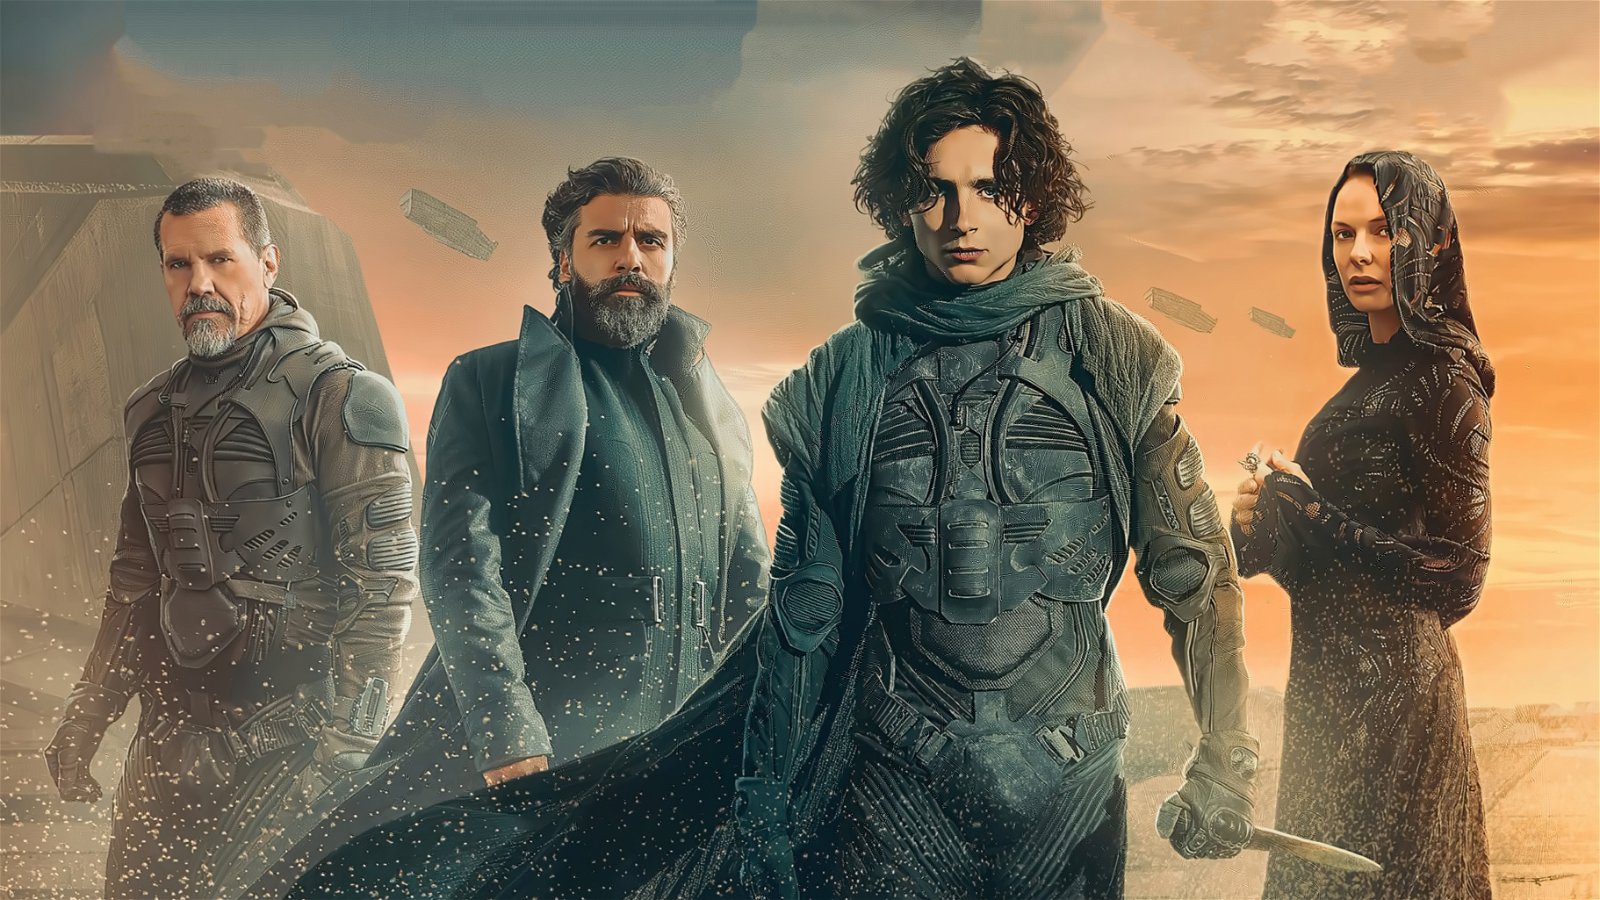 Nu finns Dune att streama på HBO Max